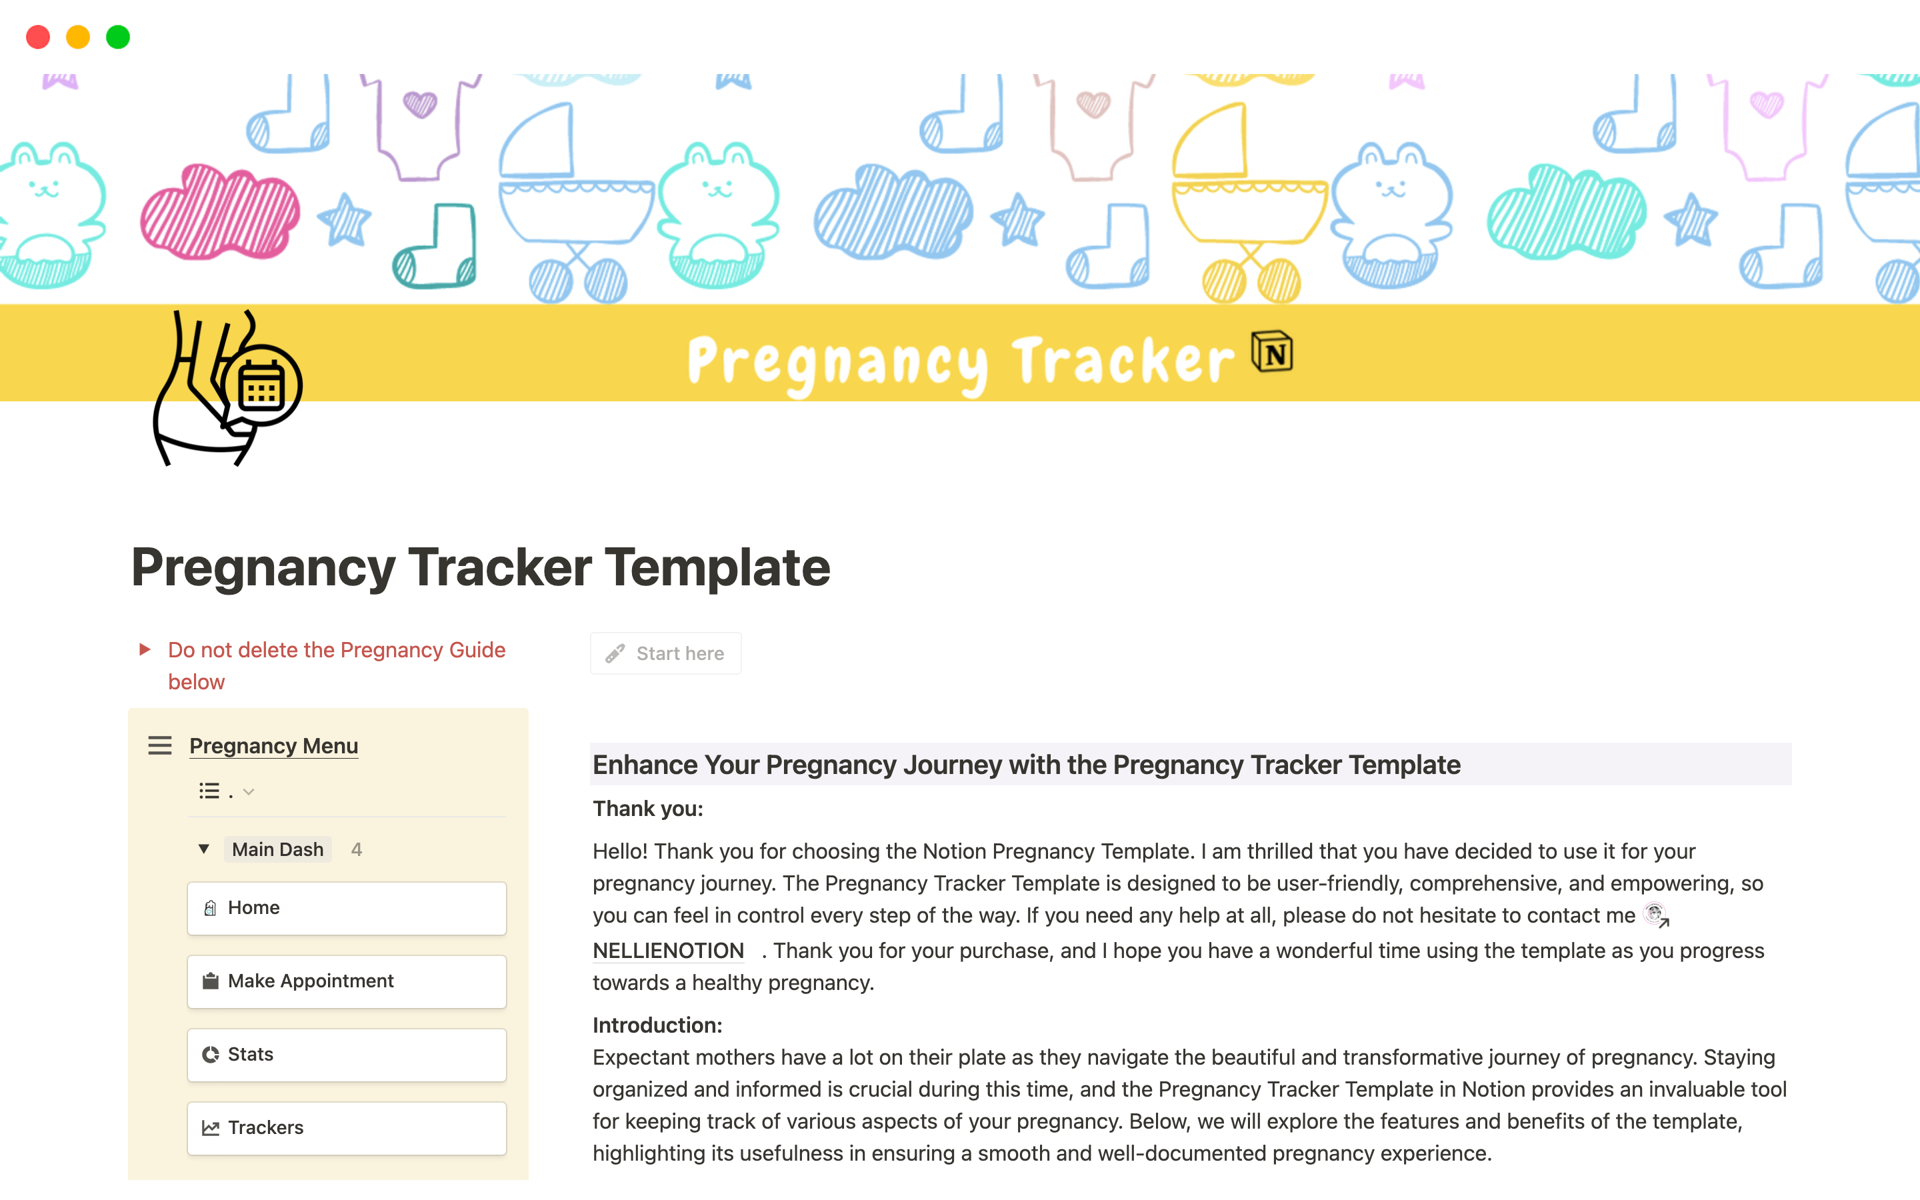 En förhandsgranskning av mallen för Pregnancy Tracker Template